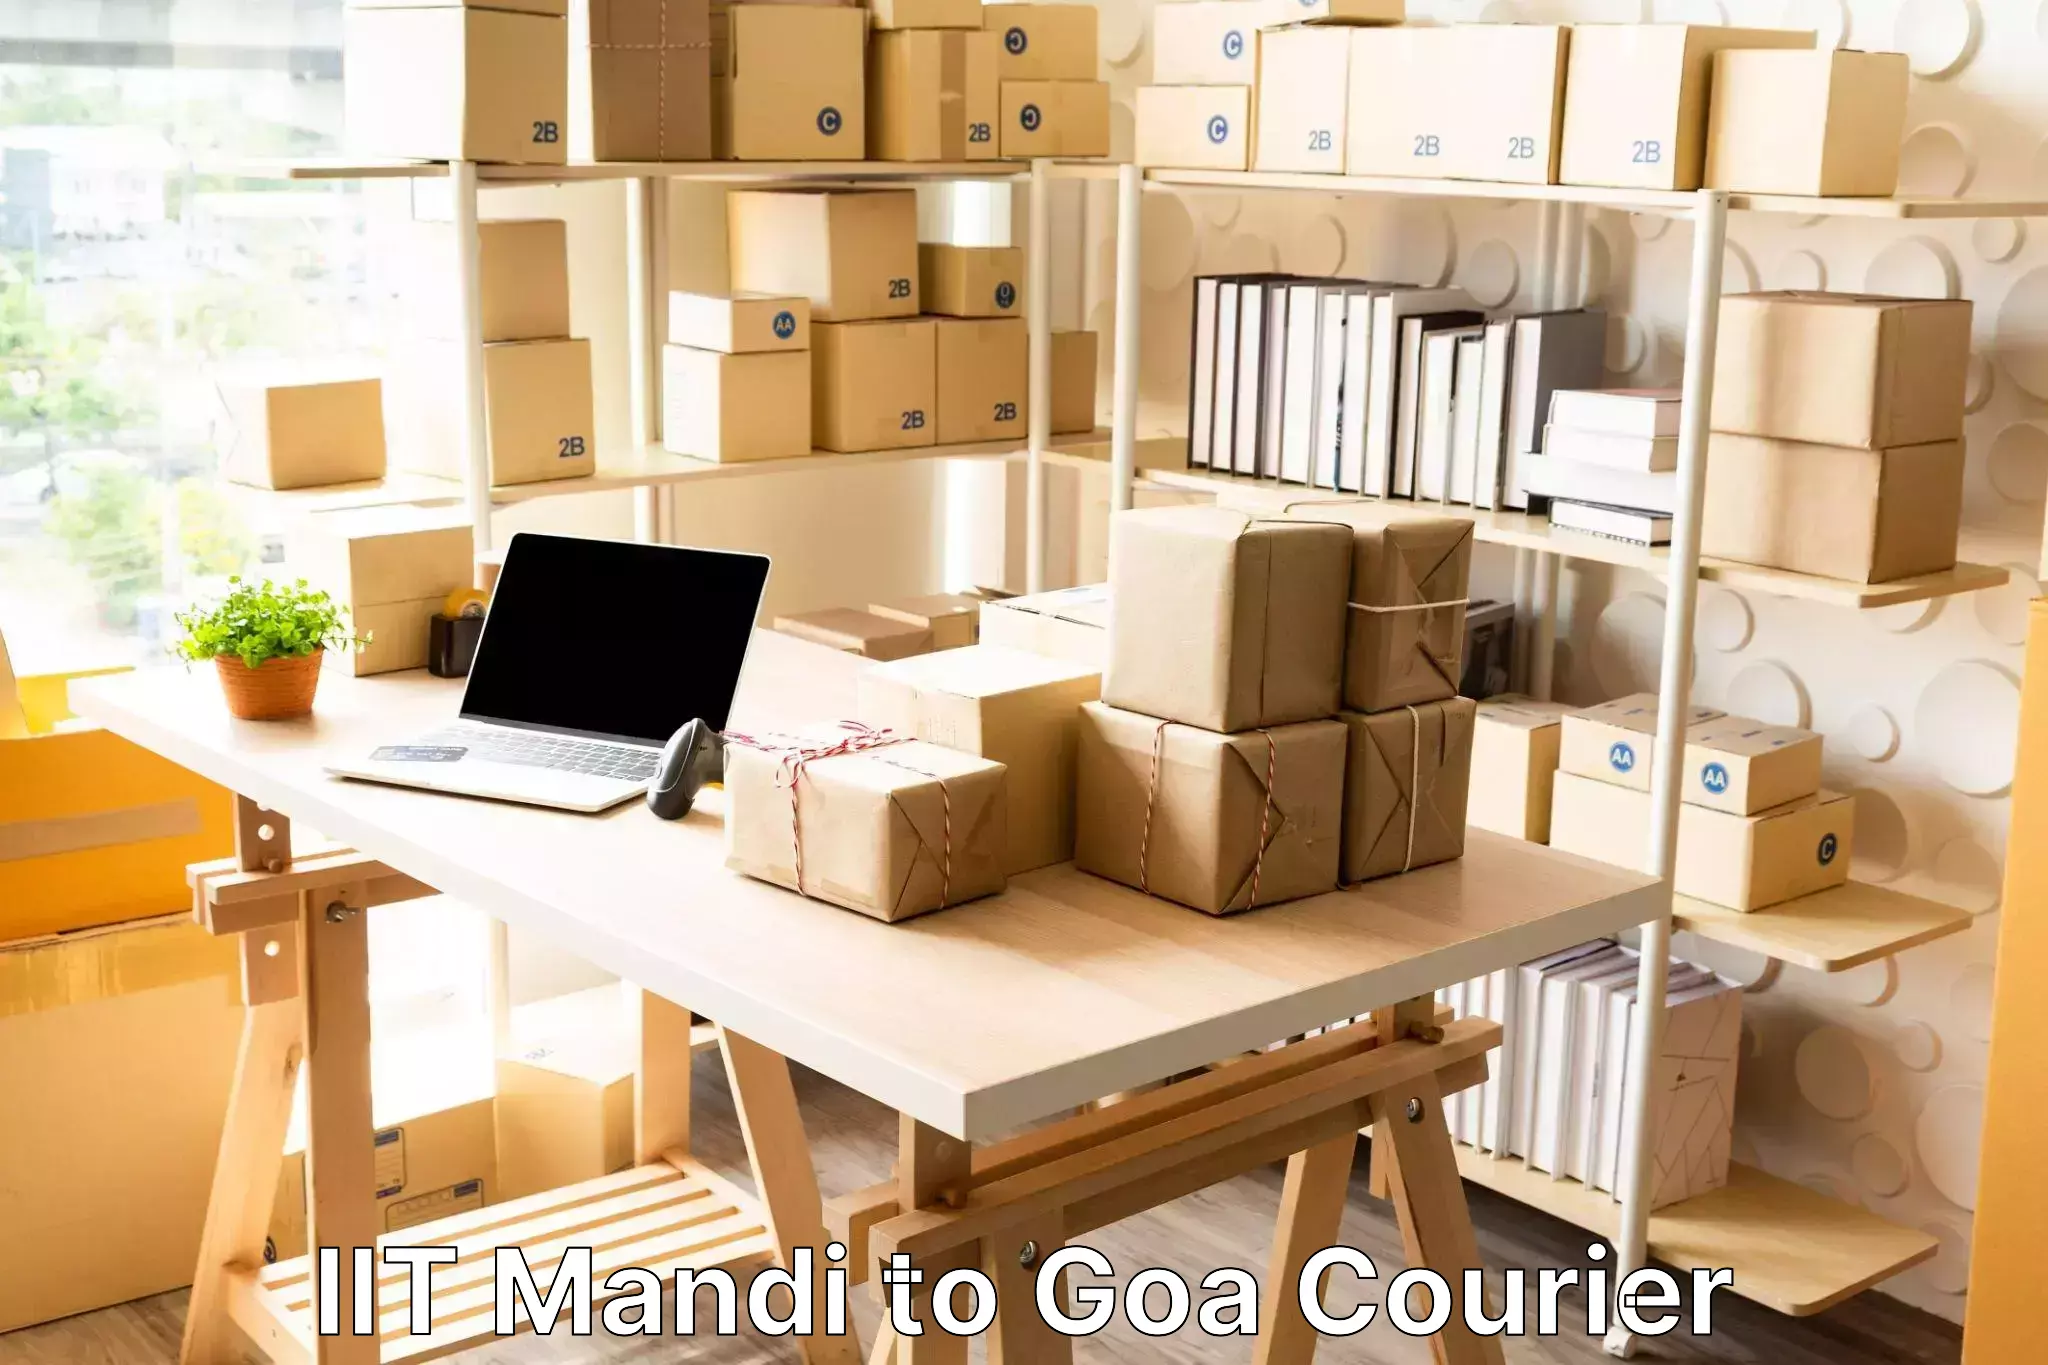 Door-to-door baggage service IIT Mandi to IIT Goa